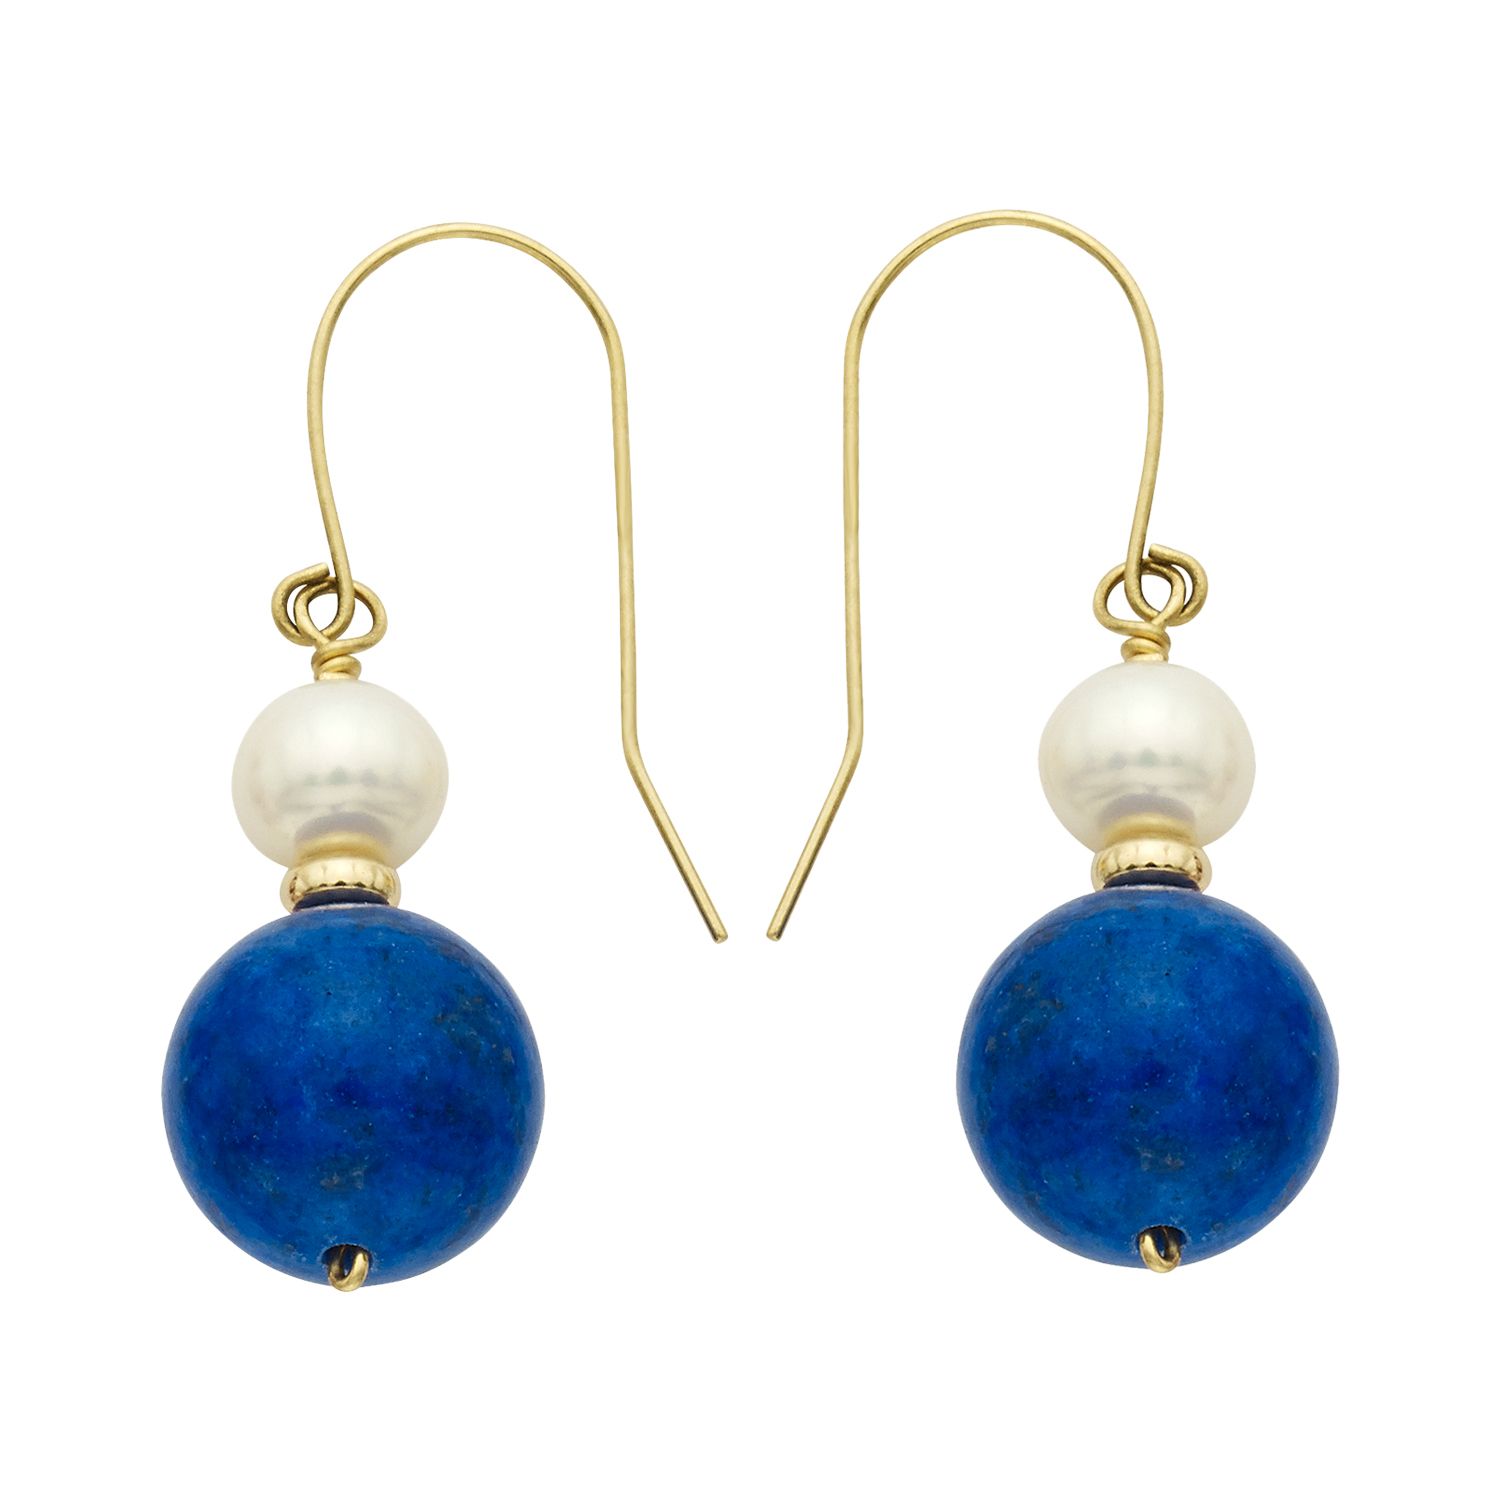 real stone blue lapislazzuli Pearl earrings Silver earrings.